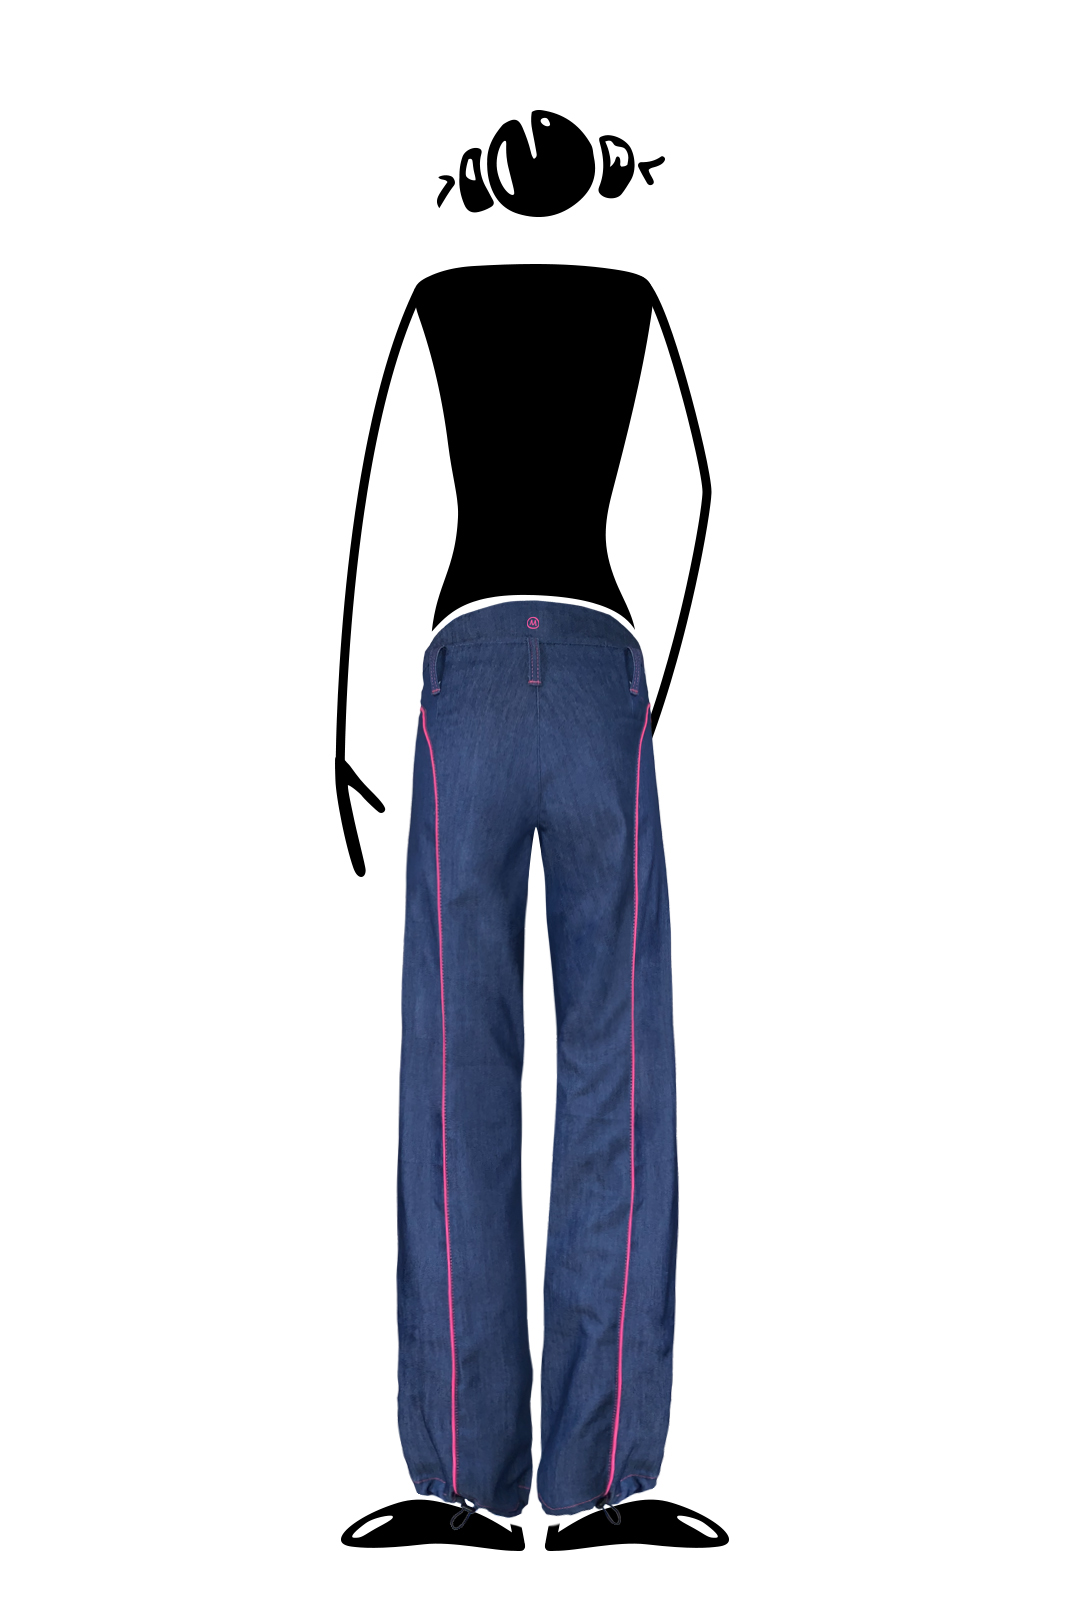 Jeans women for climbing KATY Monvic women's long climbing trousers